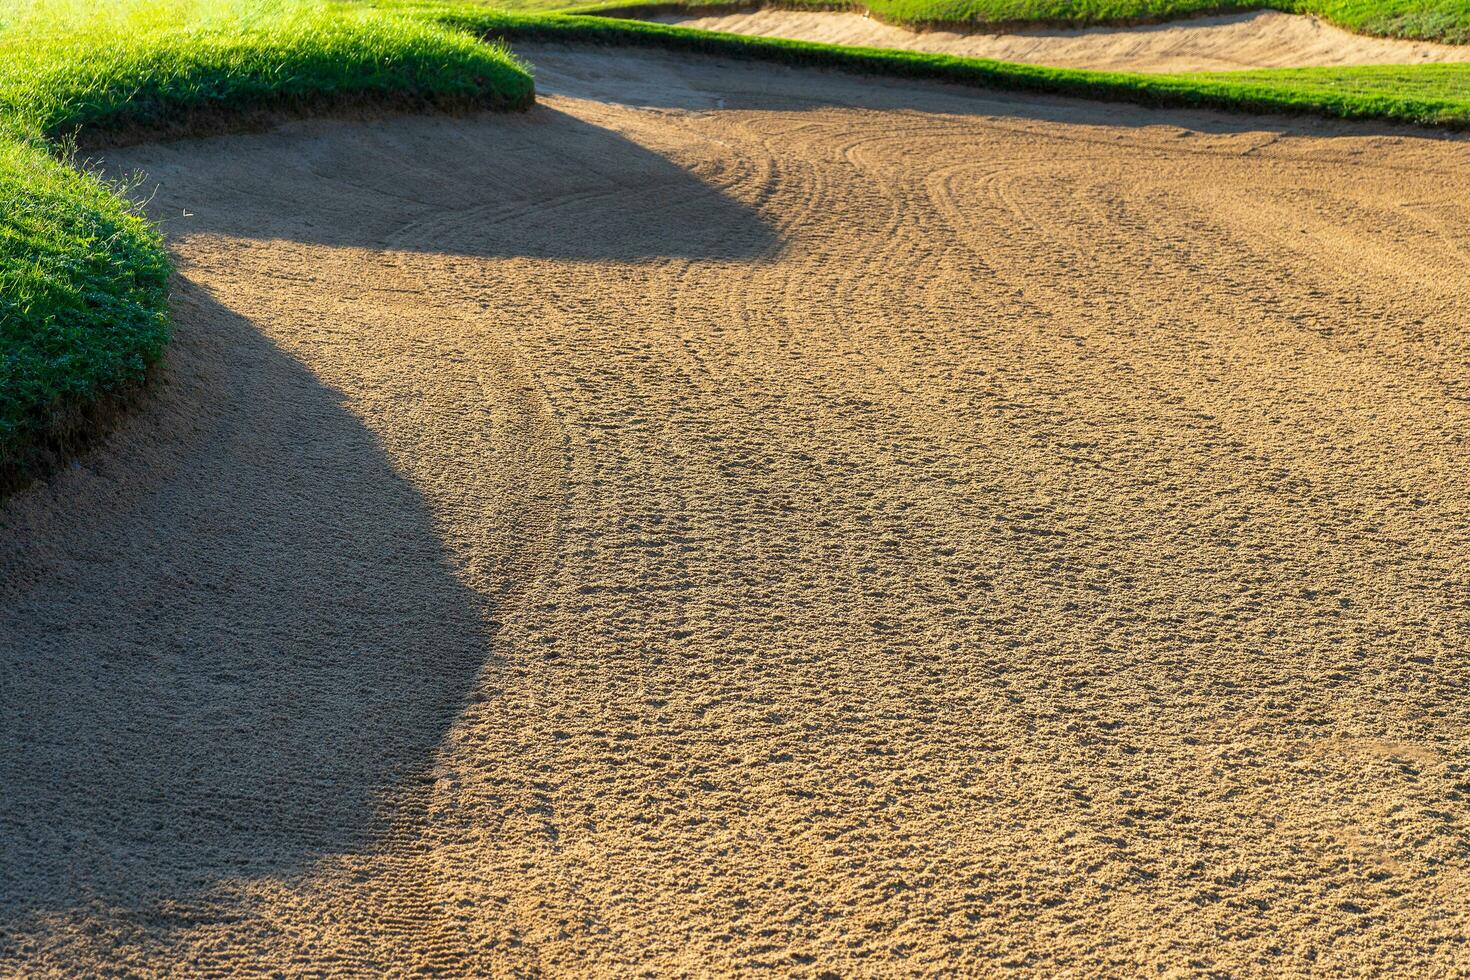 golf corso sabbia fossa bunker, verde erba circostante il bellissimo sabbia fori è uno di il maggior parte stimolante ostacoli per giocatori di golf e Aggiunge per il bellezza di il golf corso. foto